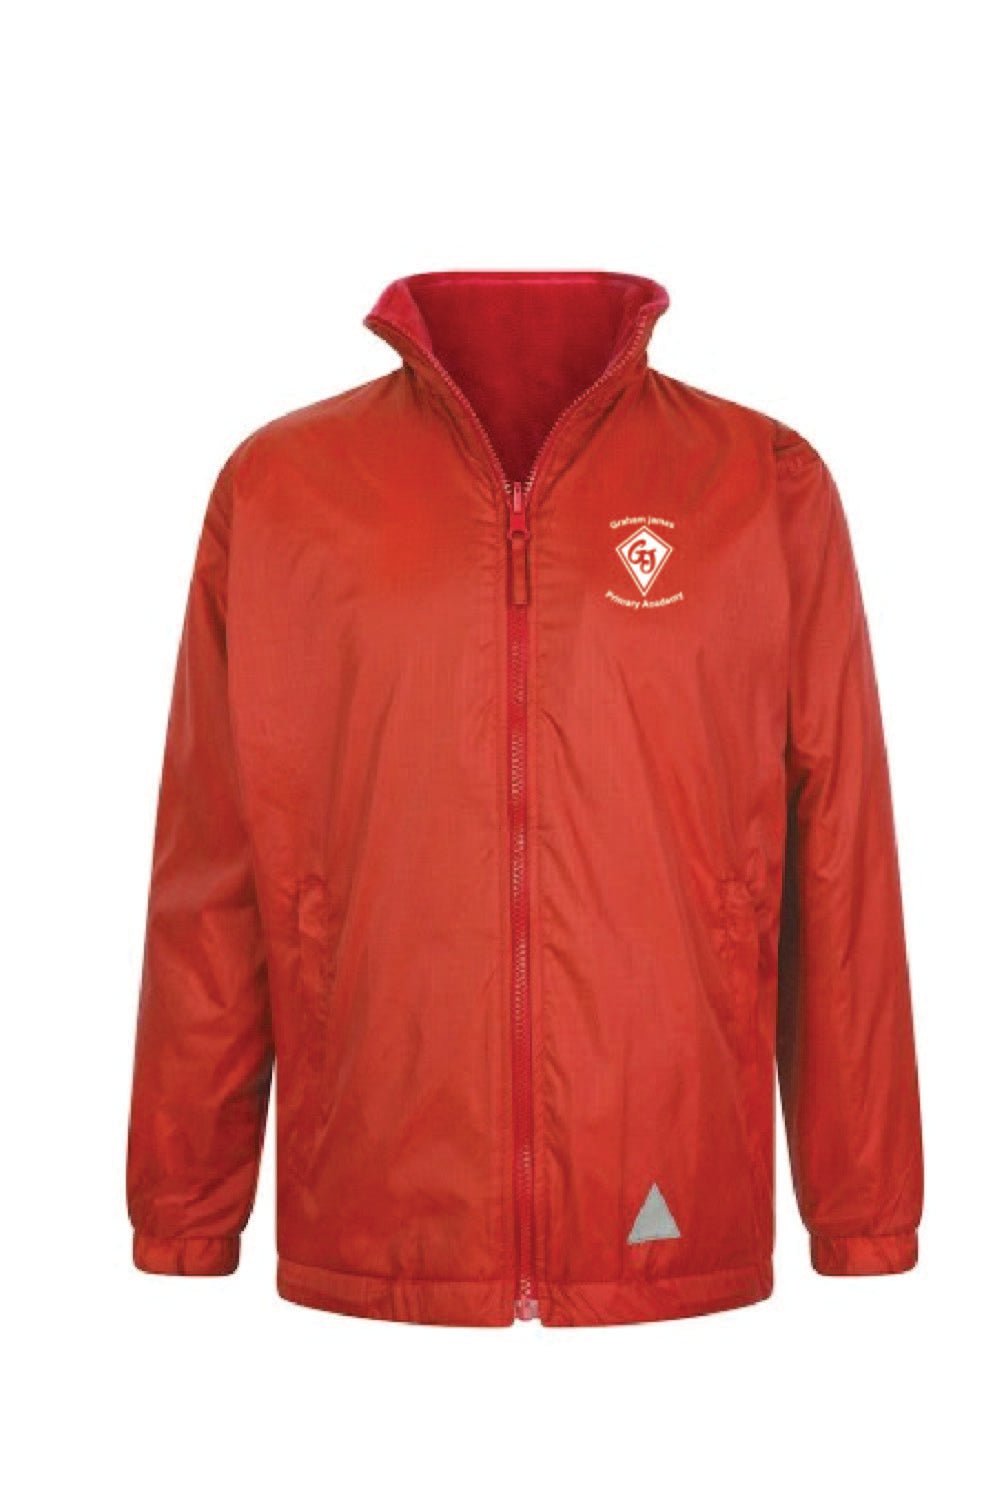 Graham James Reversible School Fleece Jacket - Uniformwise Schoolwear